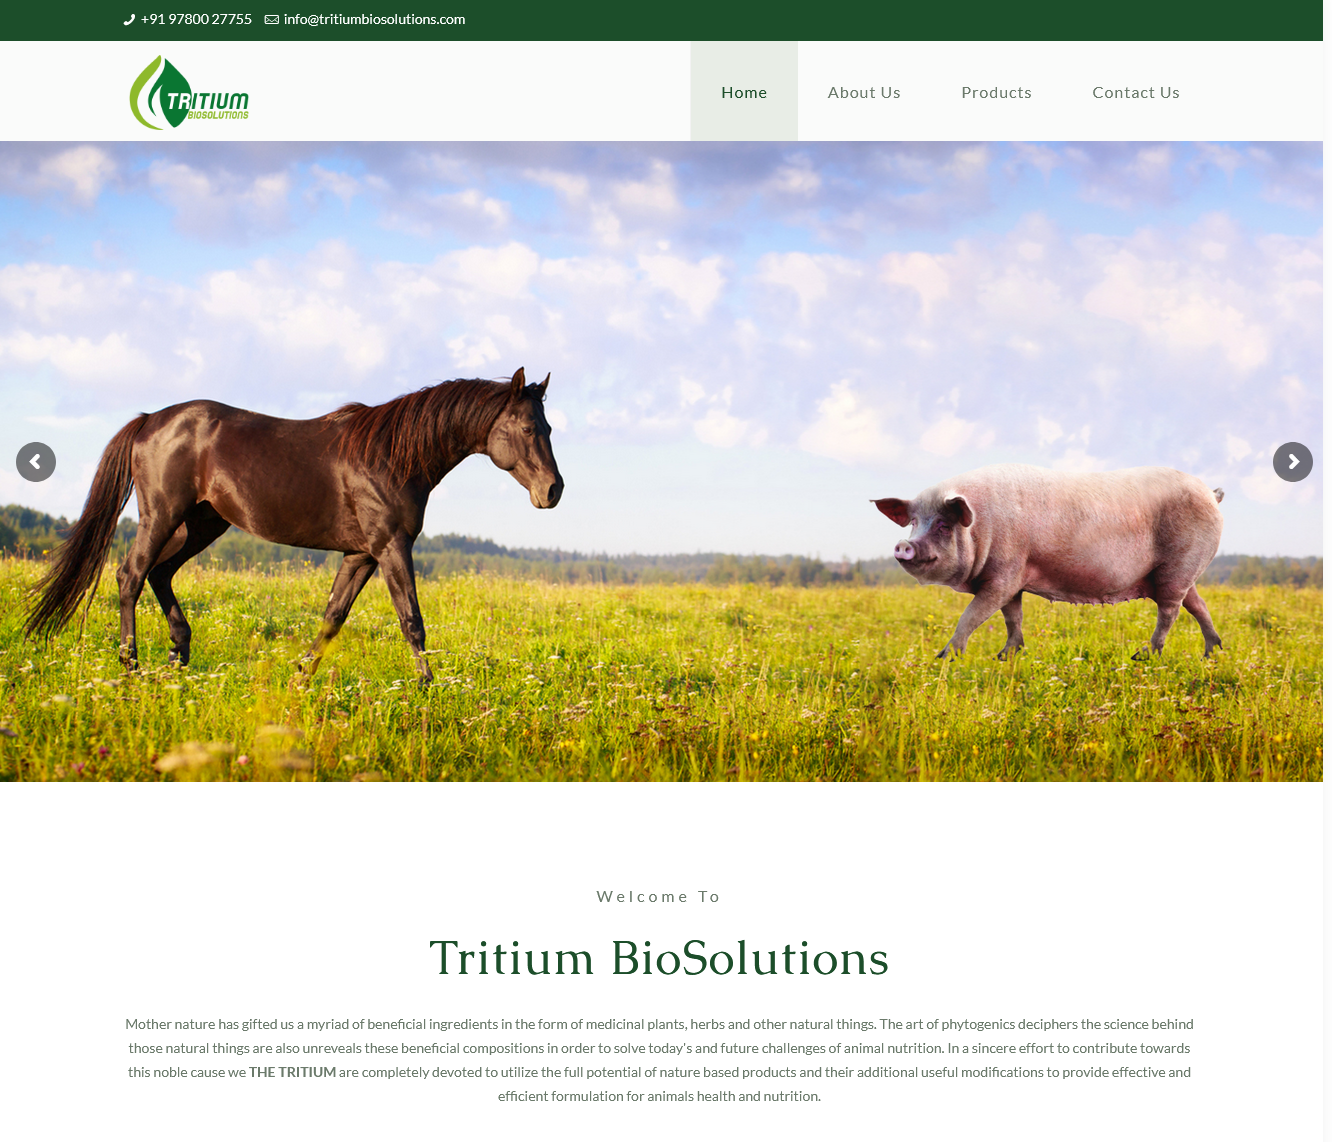 Tritium Biosolutions